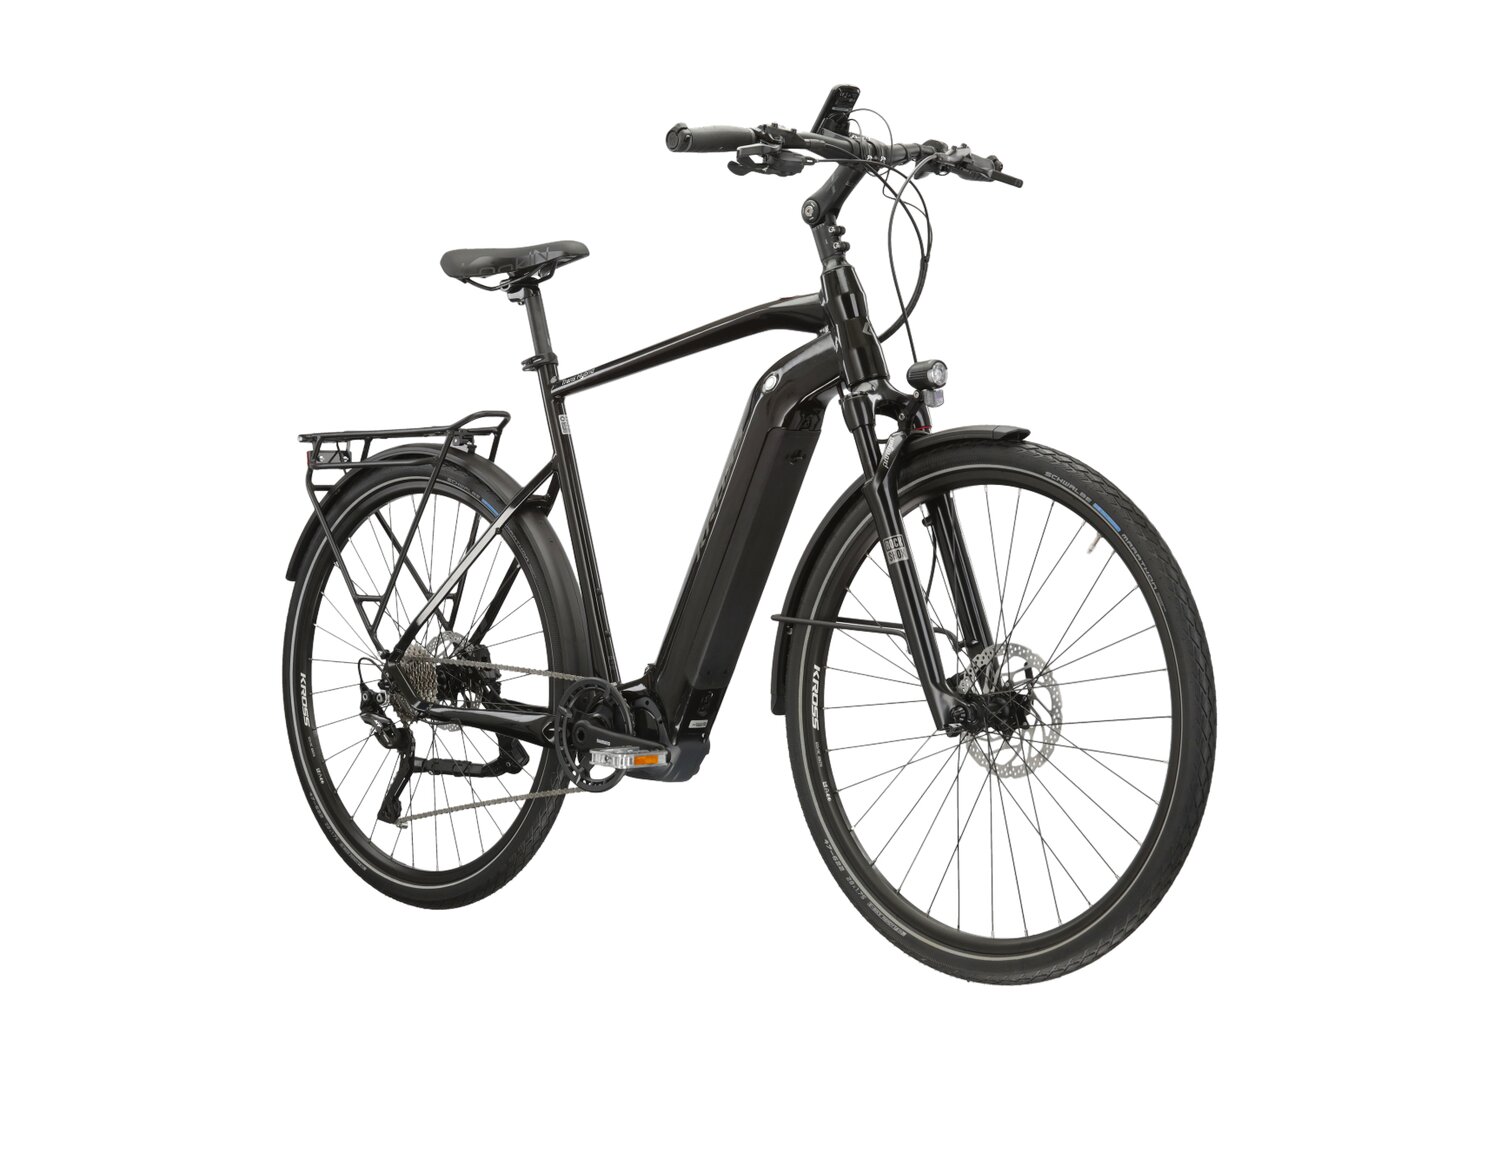  Elektryczny rower trekkingowy KROSS Trans Hybrid 6.0 630 Wh na aluminiowej ramie w kolorze czarnym wyposażony w osprzęt Shimano i napęd elektryczny Shimano